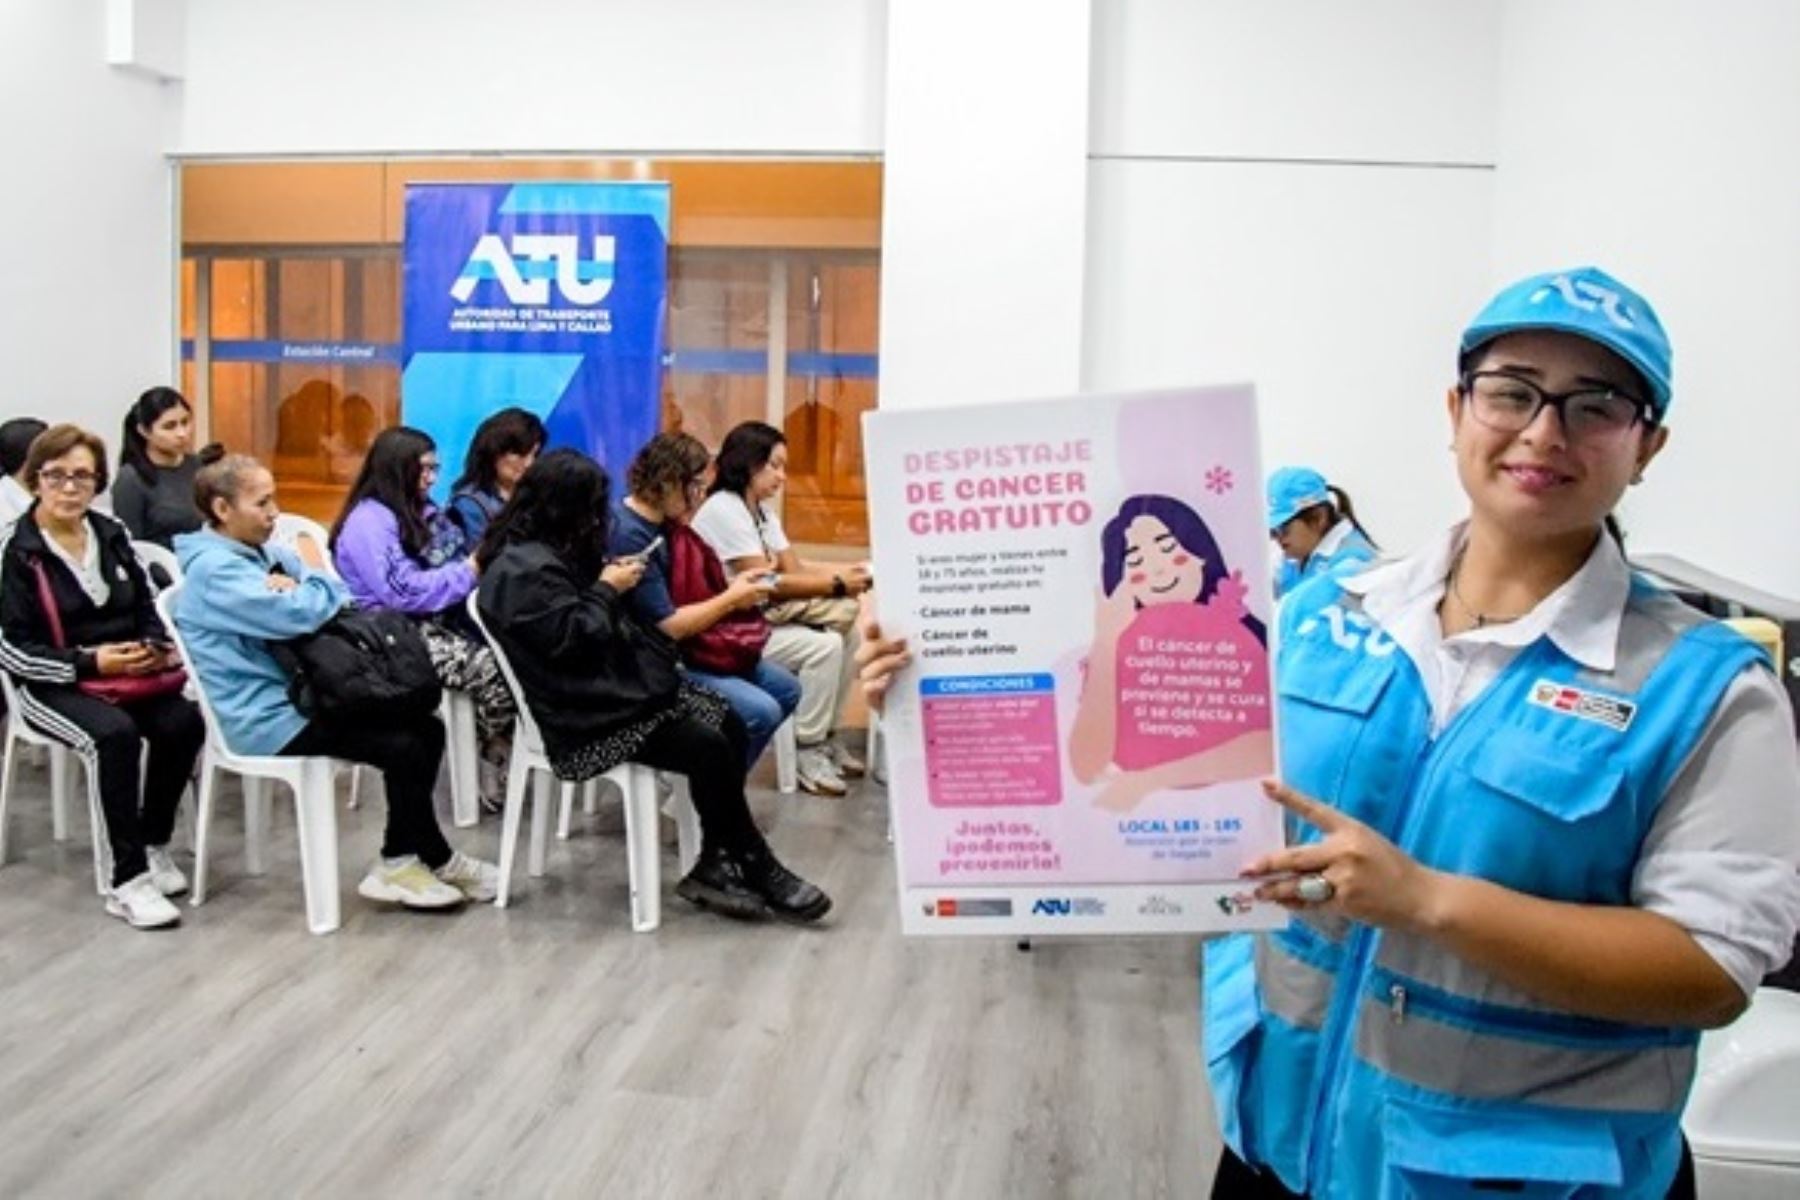 Metropolitano: despistaje gratuito de cáncer de mama y cuello uterino seguirá en junio